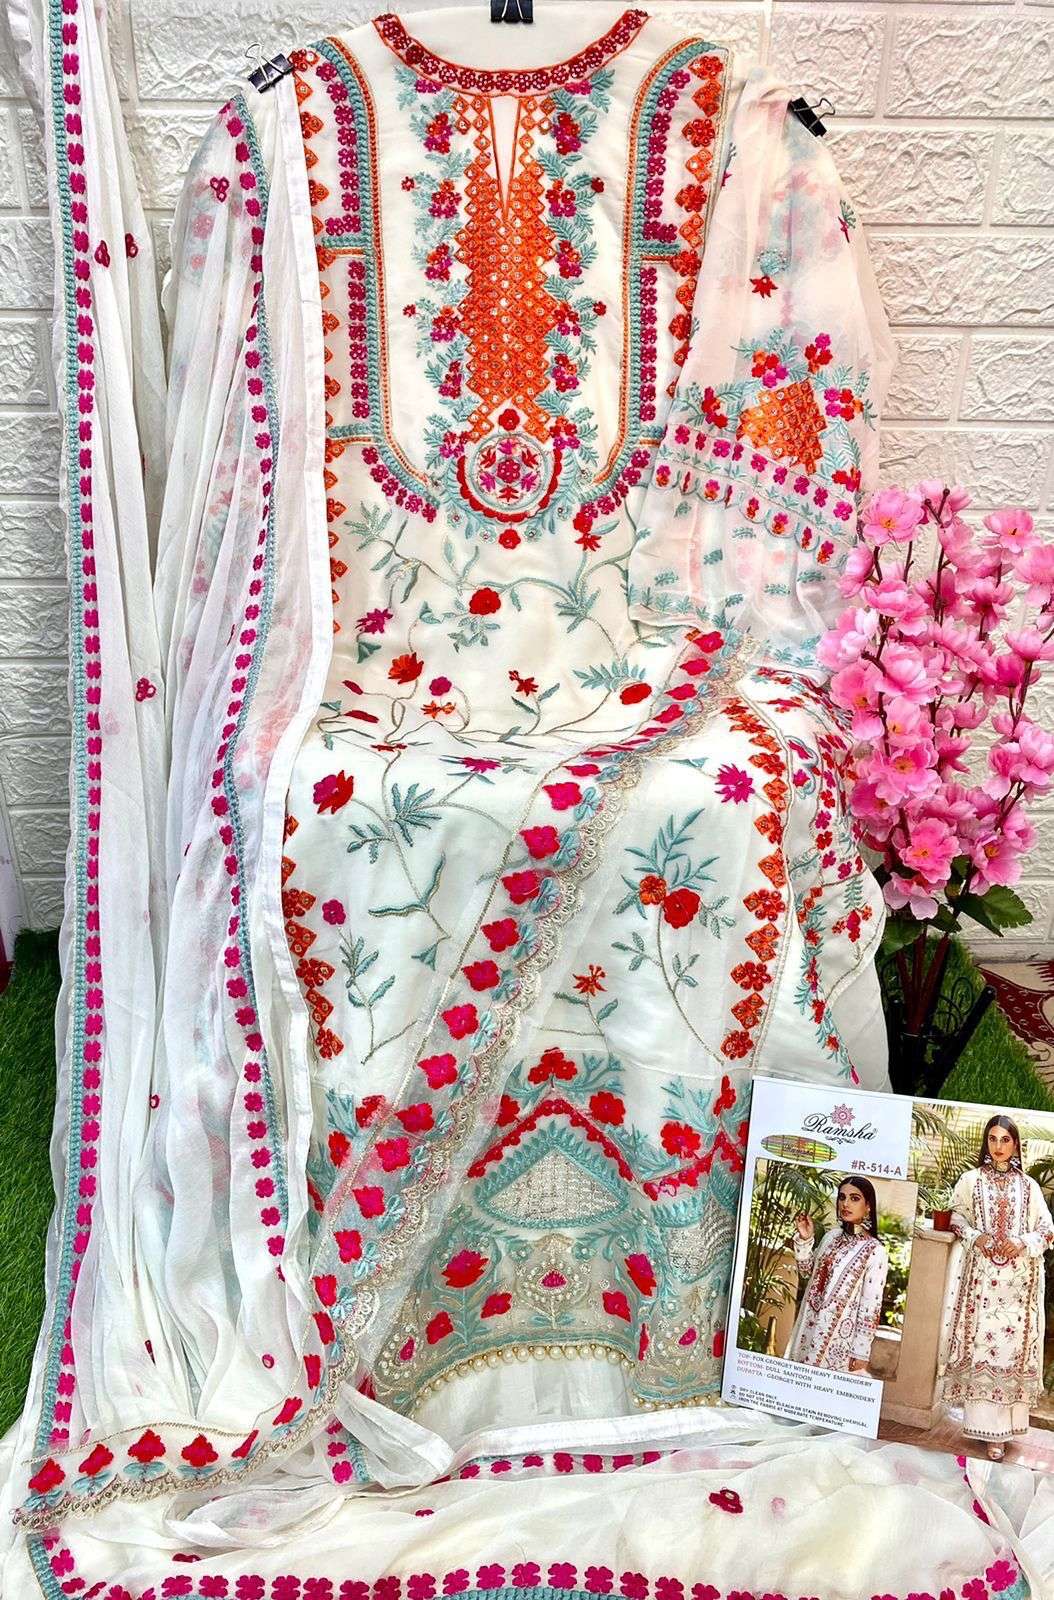 ramsha 514 series bridal look designer pakistani salwar suits wholesaler in surat 